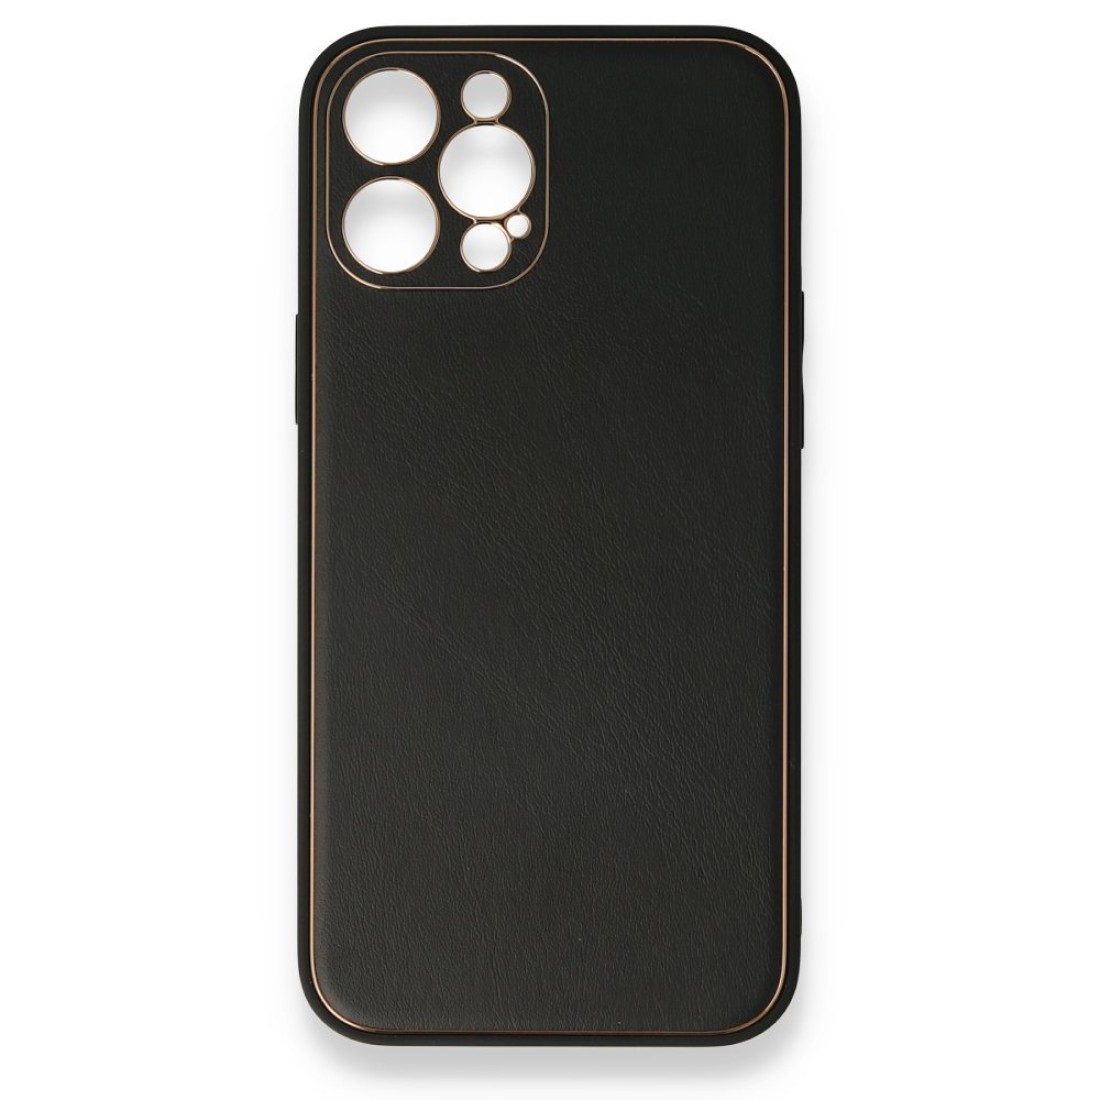 Apple iPhone 12 Pro Kılıf Coco Deri Silikon Kapak - Siyah